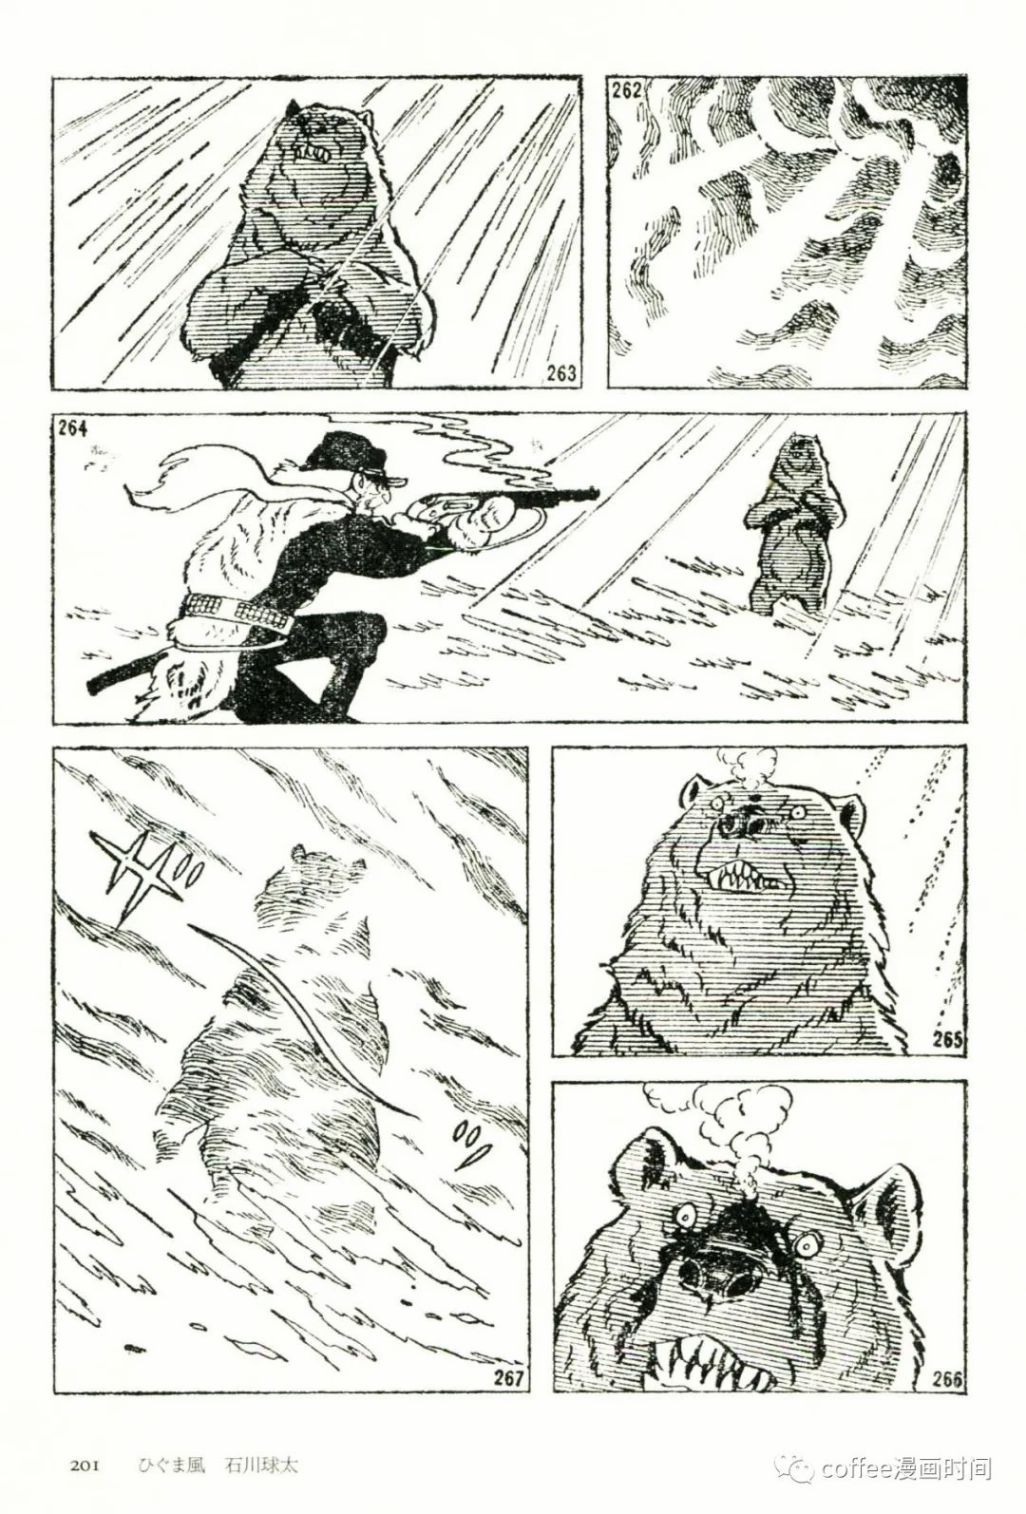 日本短篇漫畫傑作集 - 石川球太《棕熊風》 - 3